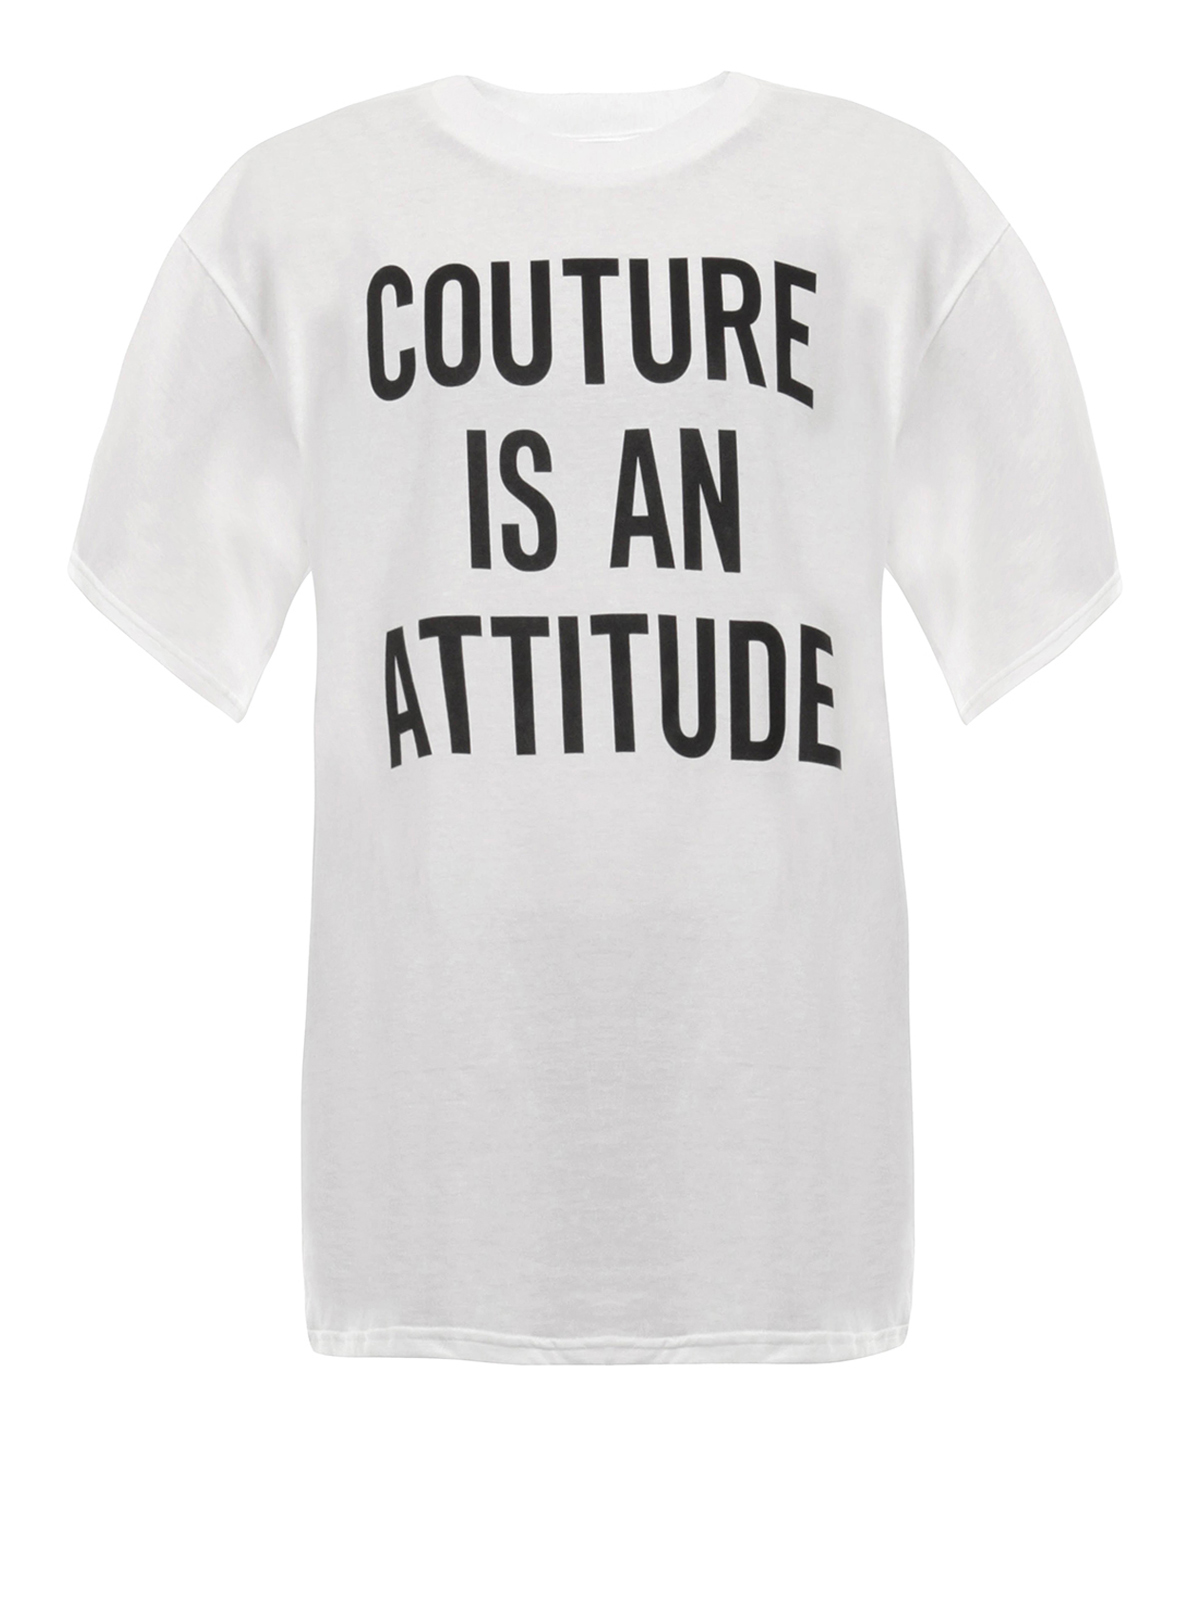 Attitude футболка мужская. Футболка Bad attitude. Rock attitude футболка. Life is an attitude